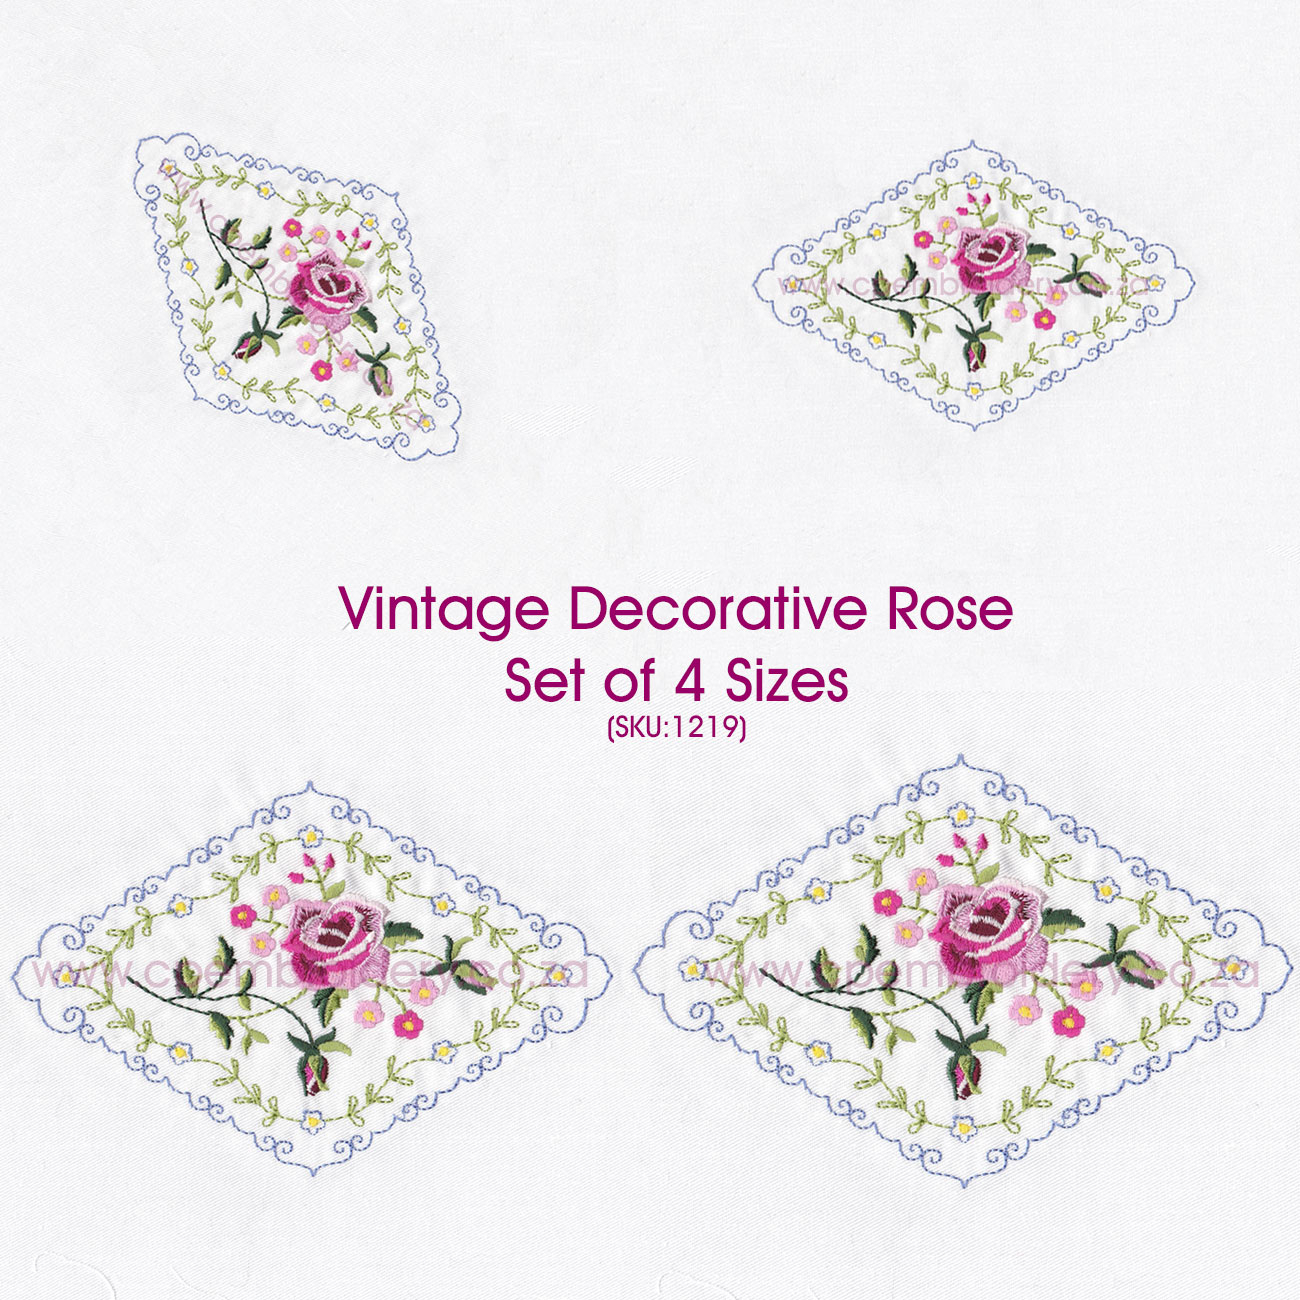 Rose Patterns For Embroidery Vintage Decorative Floral Rose Design